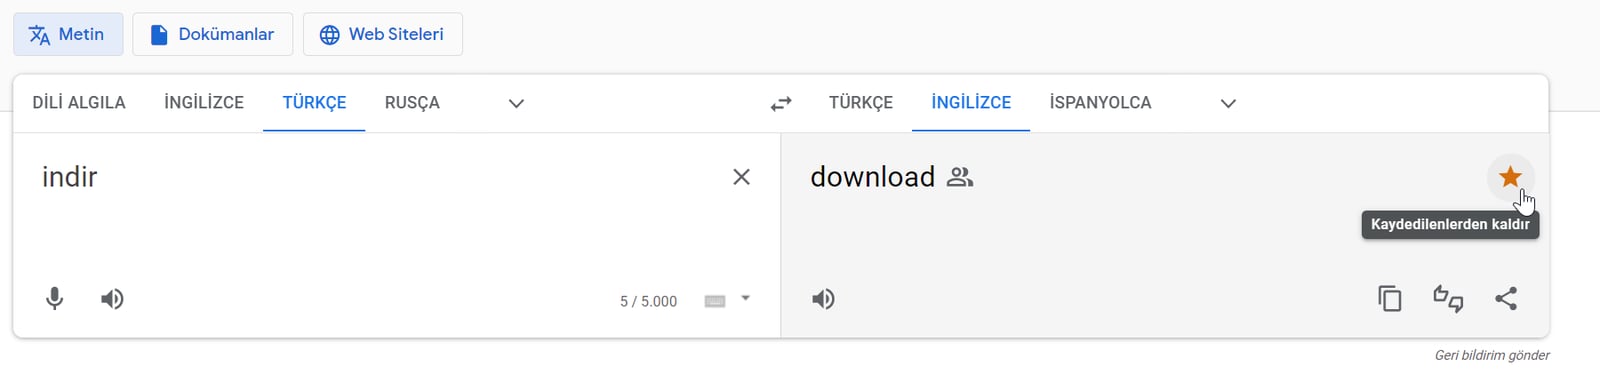 google translate daha etkin kullanmanizi saglayacak x ozellik